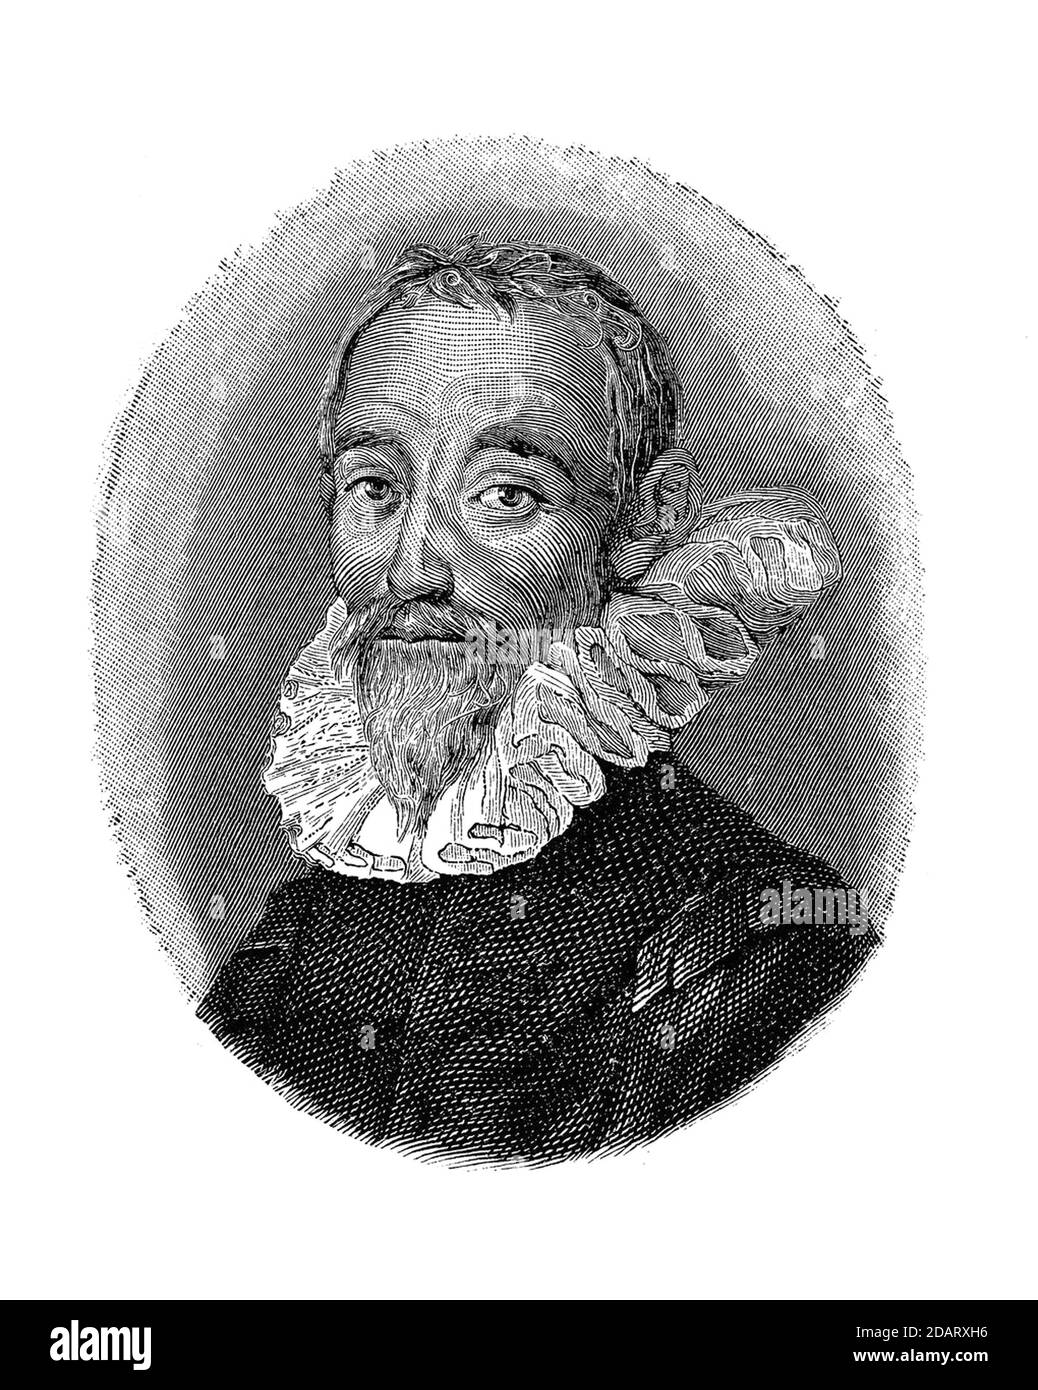 1630 ca, ITALY : The italian humanist , pastoral poet , dramatist and writer GABRIELLO CHIABRERA ( 1552 - 1638 ), the Italian Pindar . Engraved portrait by unknown , pubblished in XIX century. -  SCRITTORE - WRITER - Pindaro - ITALIA - POETA - POESIA - POETRY - LETTERATO - LITERATURE - LETTERATURA -  TEATRO - THEATRE - DRAMMATURGO - commediografo - incisione - engraving - illustrazione - illustration - portrait - ritratto - beard - barba --- ARCHIVIO GBB Stock Photo